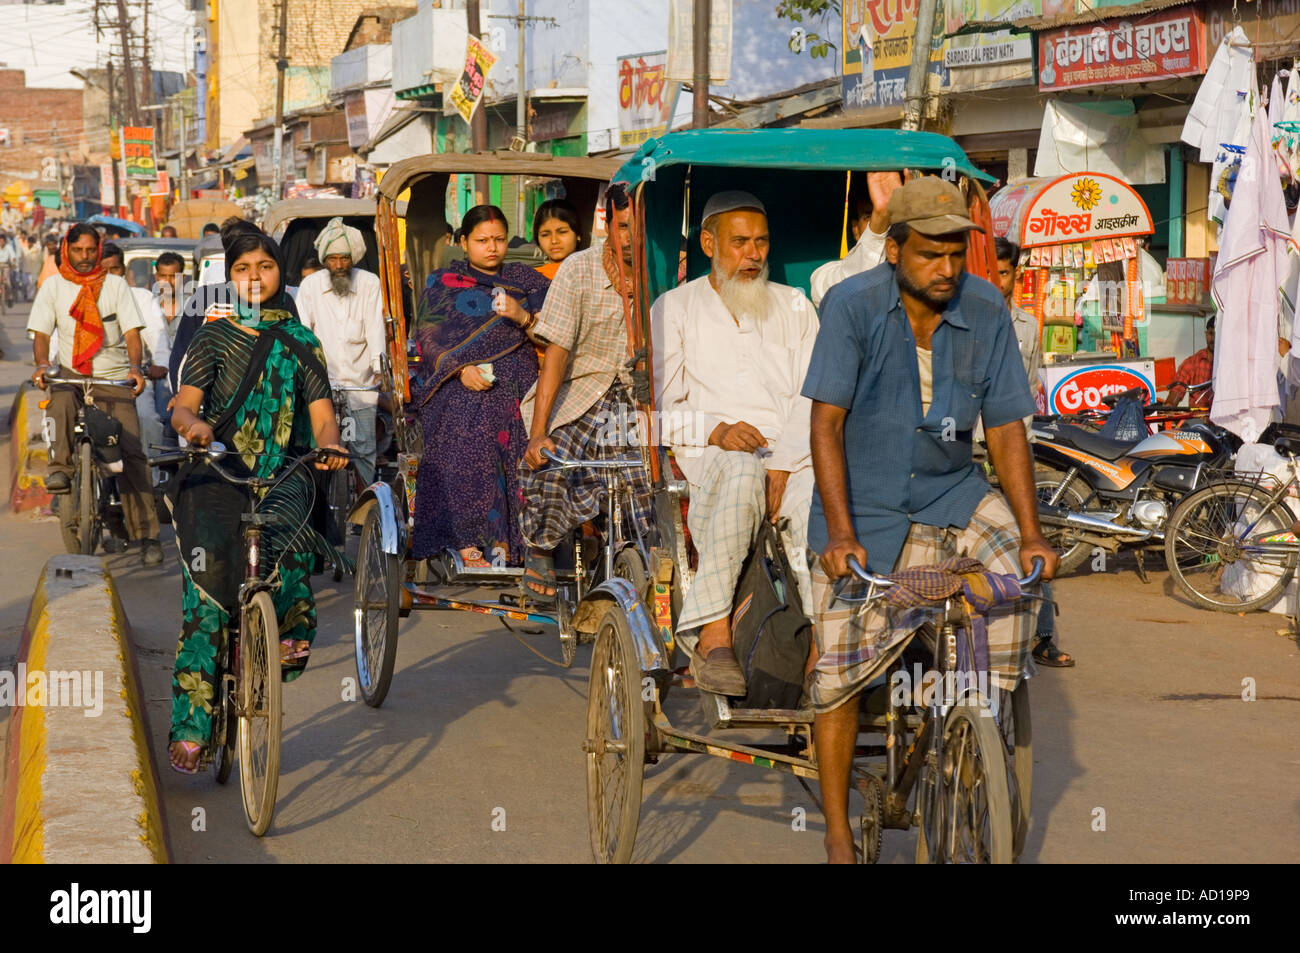 Une vue en perspective d'une rue animée à Varanasi avec des gens sur des vélos et vélos-pousse. Banque D'Images